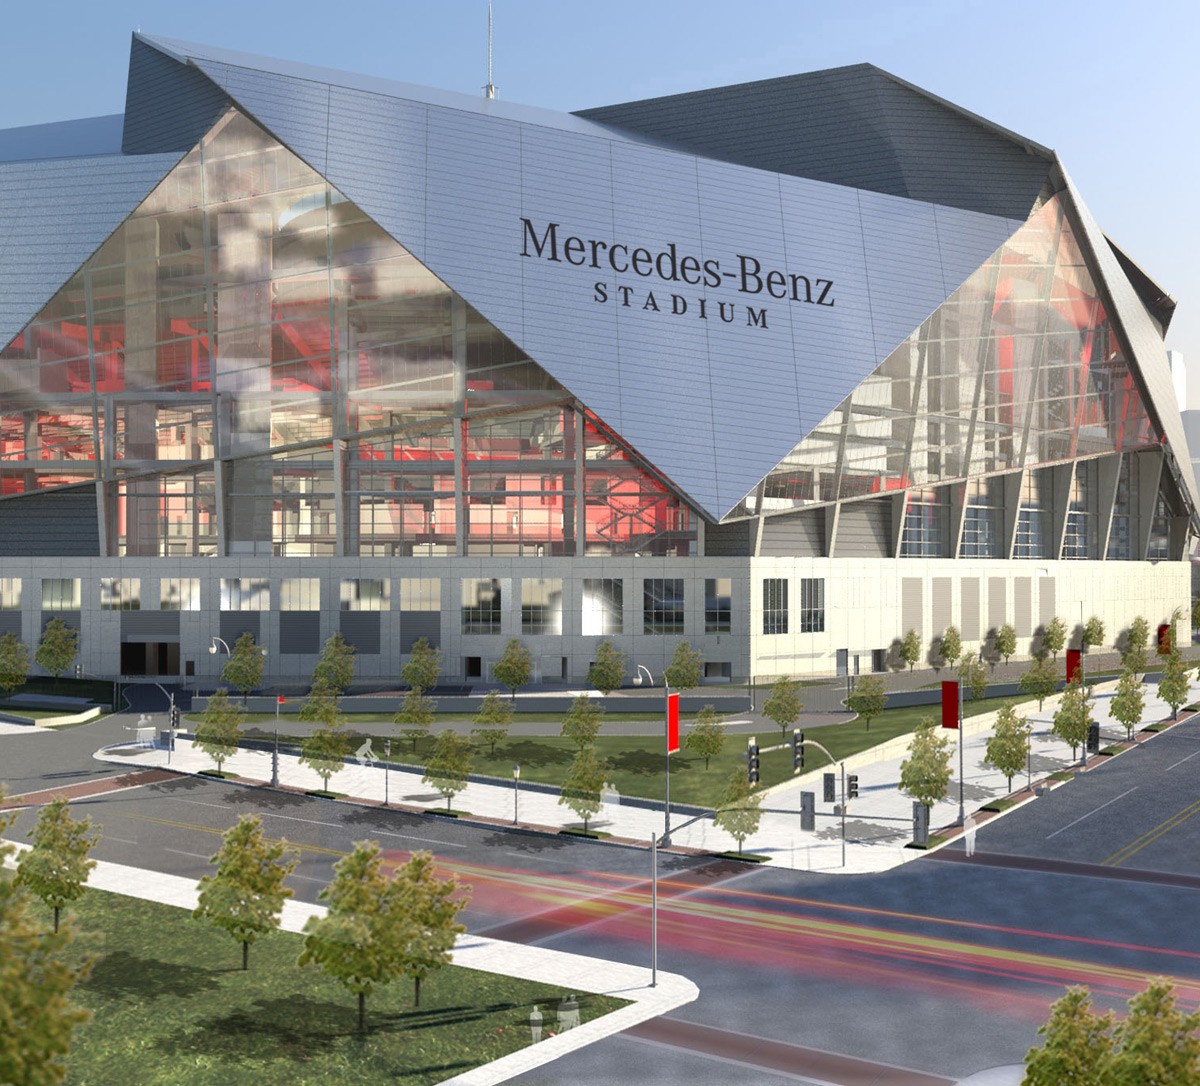 Mercedes Benz Stadium Schedule 2022 Mercedes-Benz Stadium Construction Schedule Slips - Football Stadium Digest